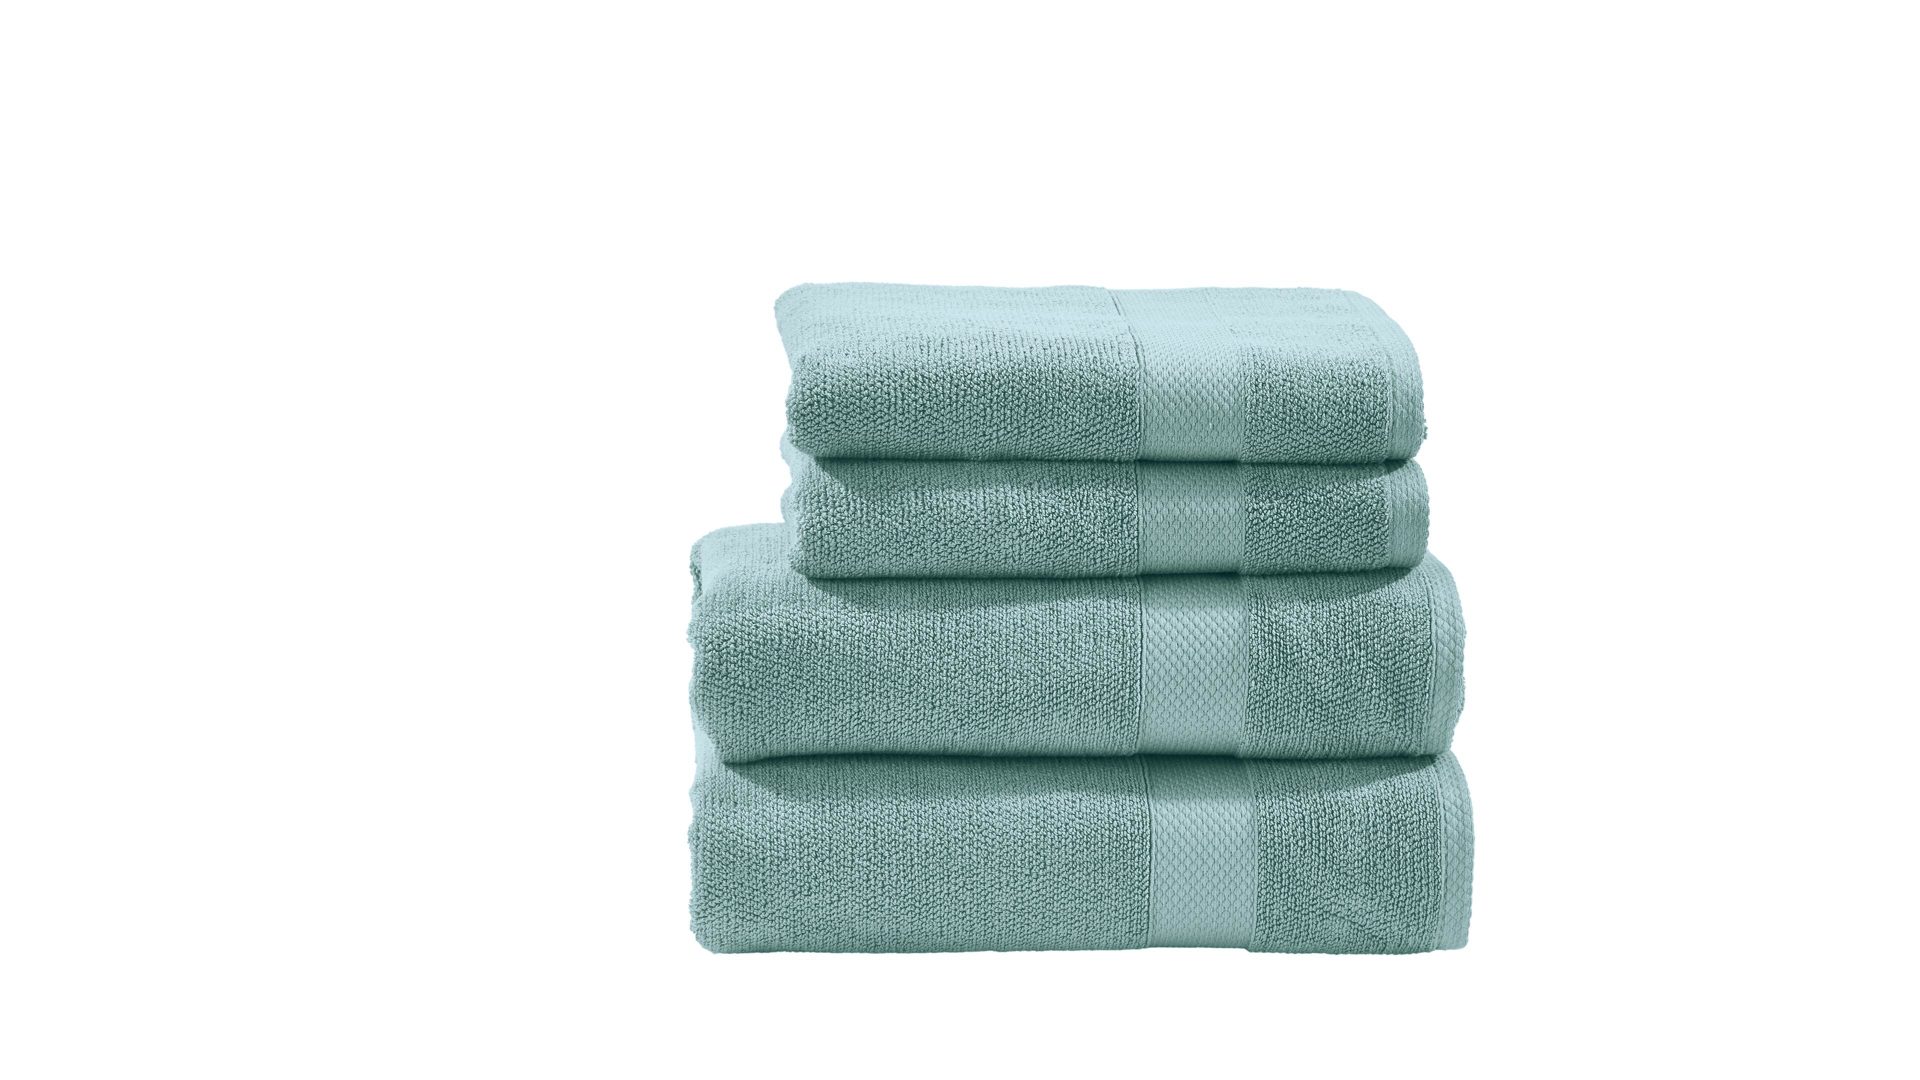 Handtuch-Set Done by karabel home company aus Stoff in Grün done Handtuch-Set Deluxe für Ihre Heimtextilien oceanfarbene Baumwolle – vierteilig